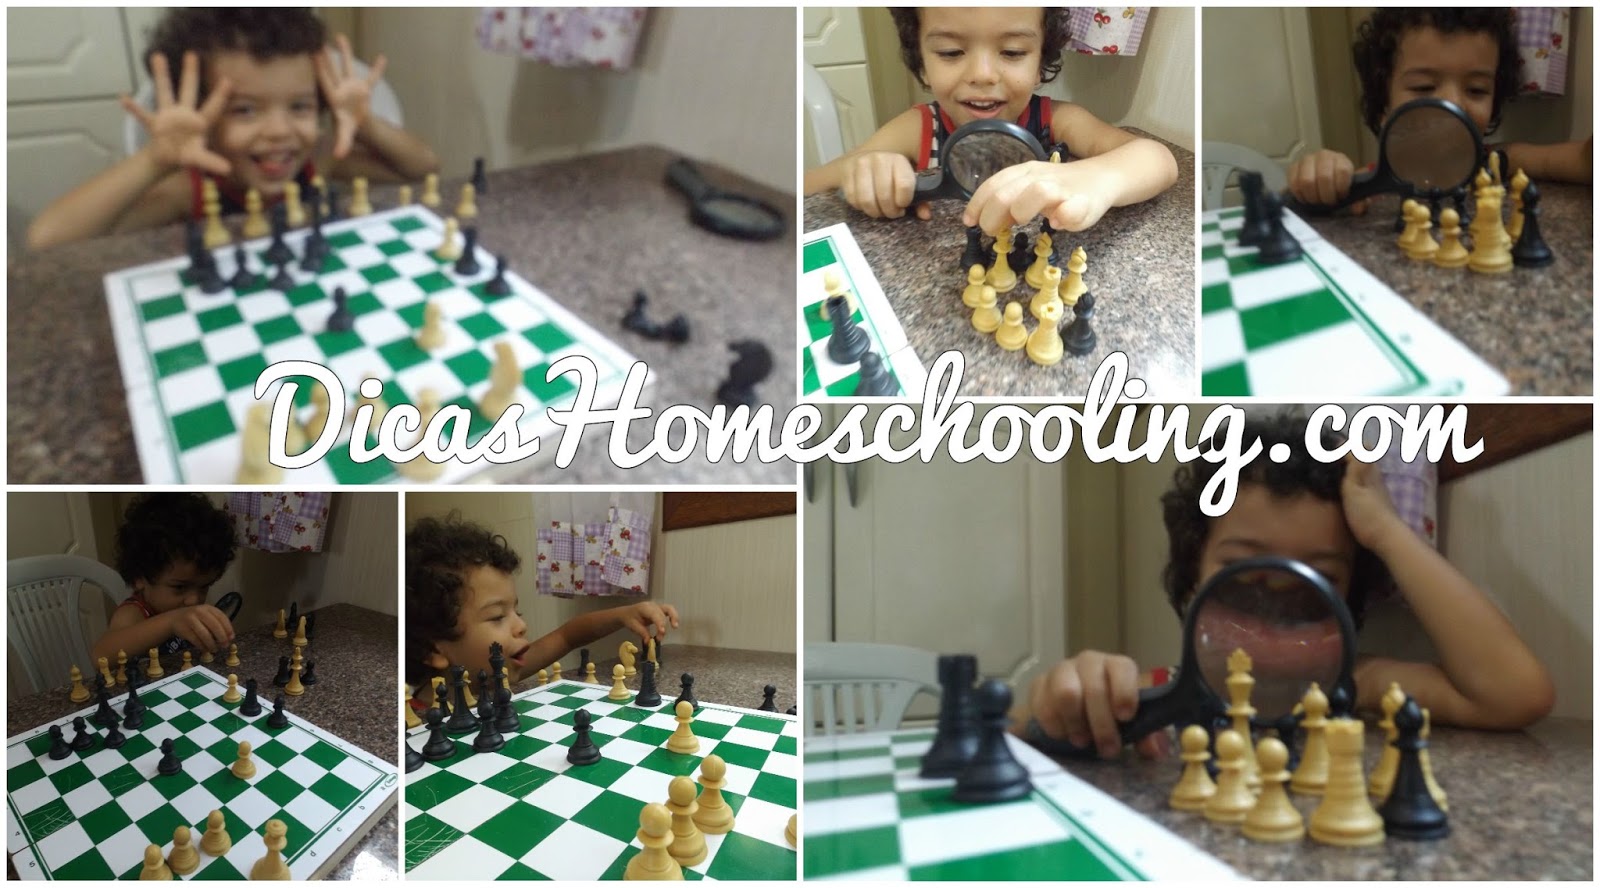 Comprei um jogo de xadrez pra ensinar meu filho, mas o tablueiro